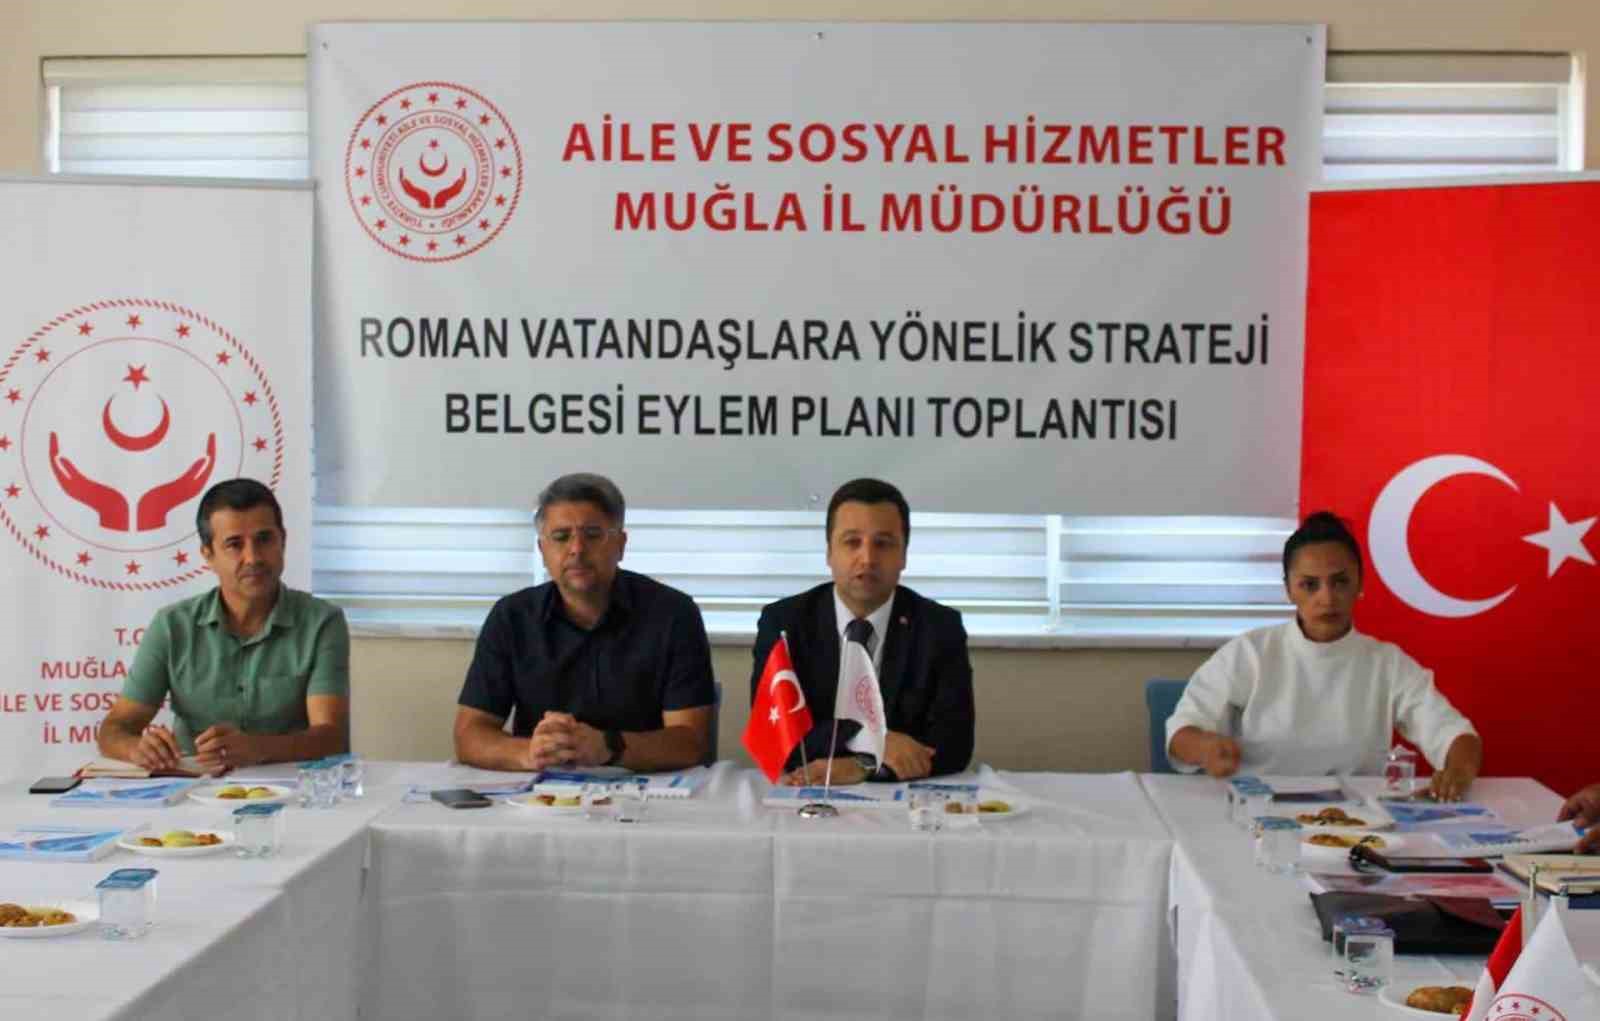 Muğla’da Roman vatandaşlara yeni strateji eylem plan toplantısı gerçekleştirildi